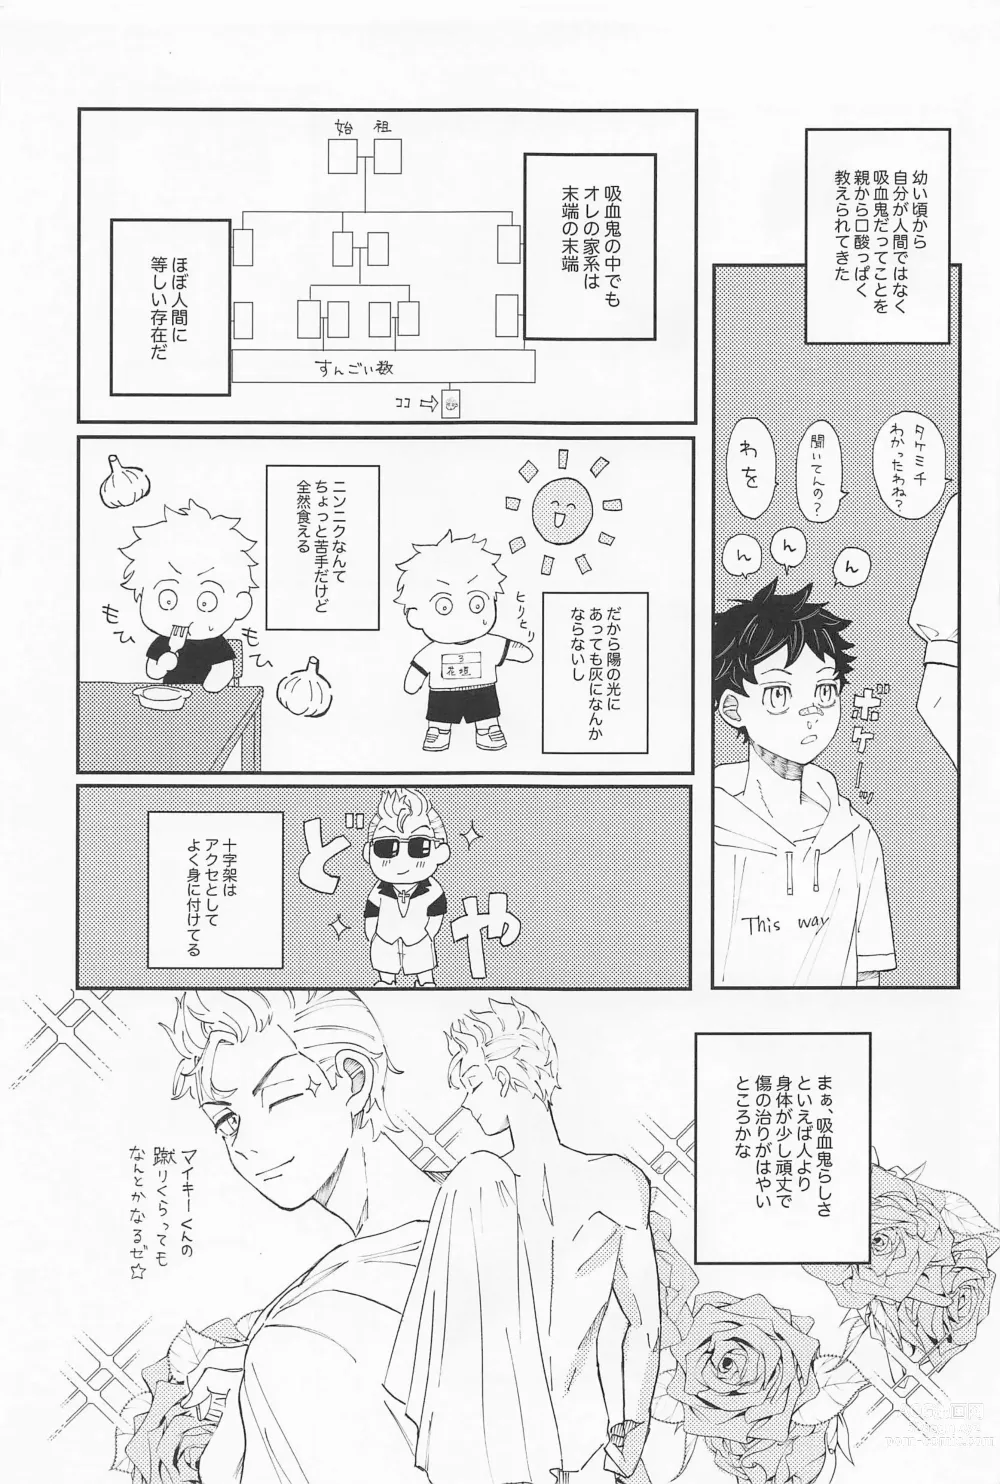 Page 6 of doujinshi Kimi no Sei de Baguri Makuri